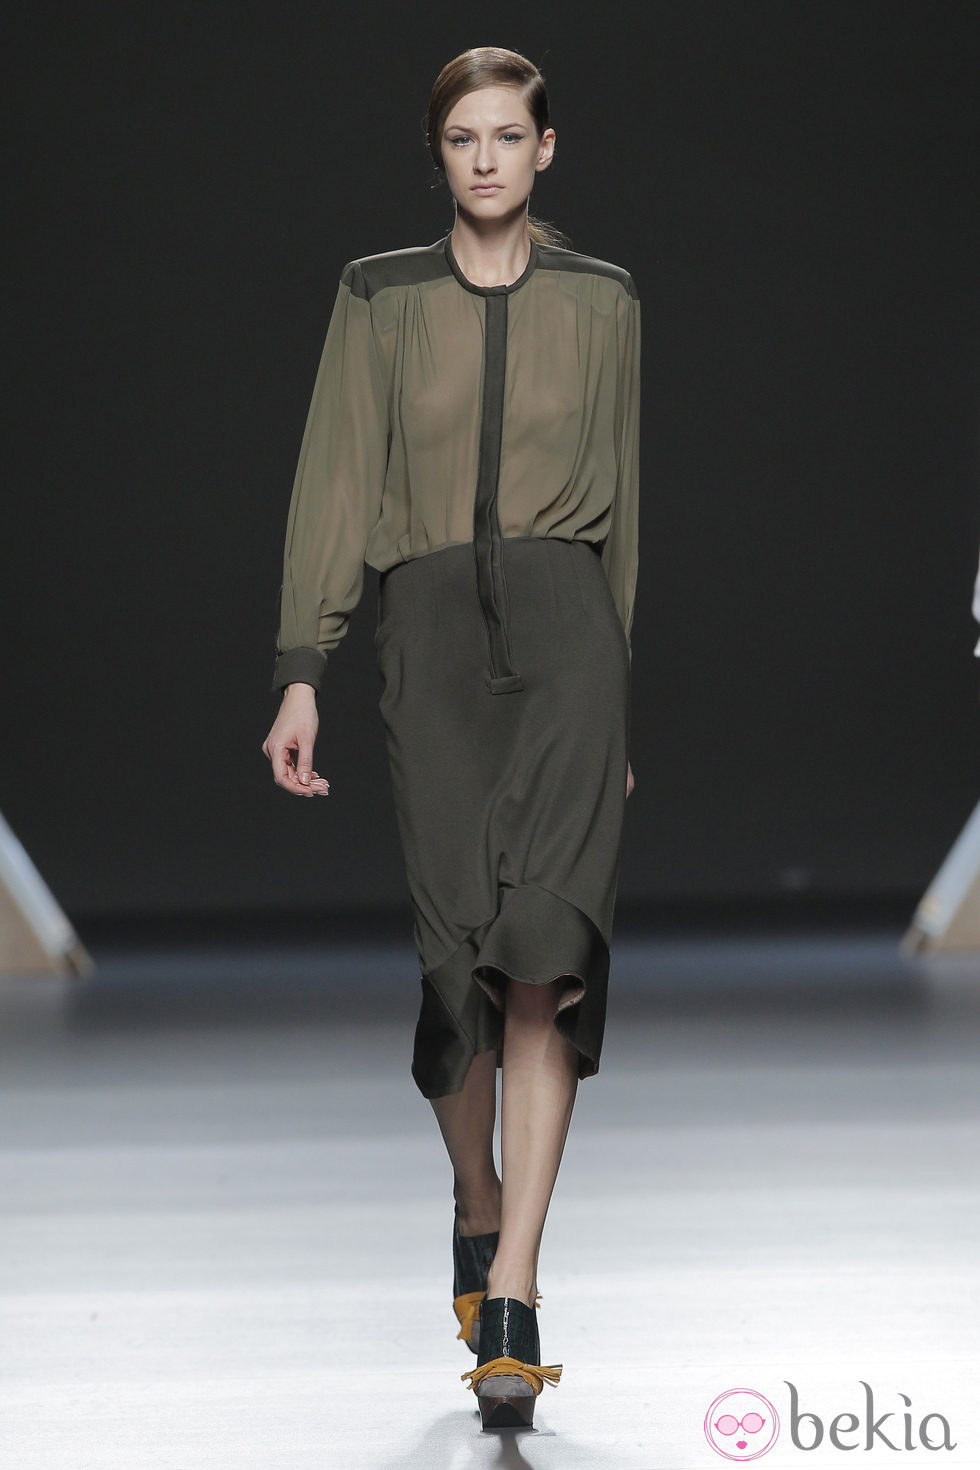 Vestido con transparencias de la colección otoño/invierno 2013/2014 de Moisés Nieto en Madrid Fashion Week